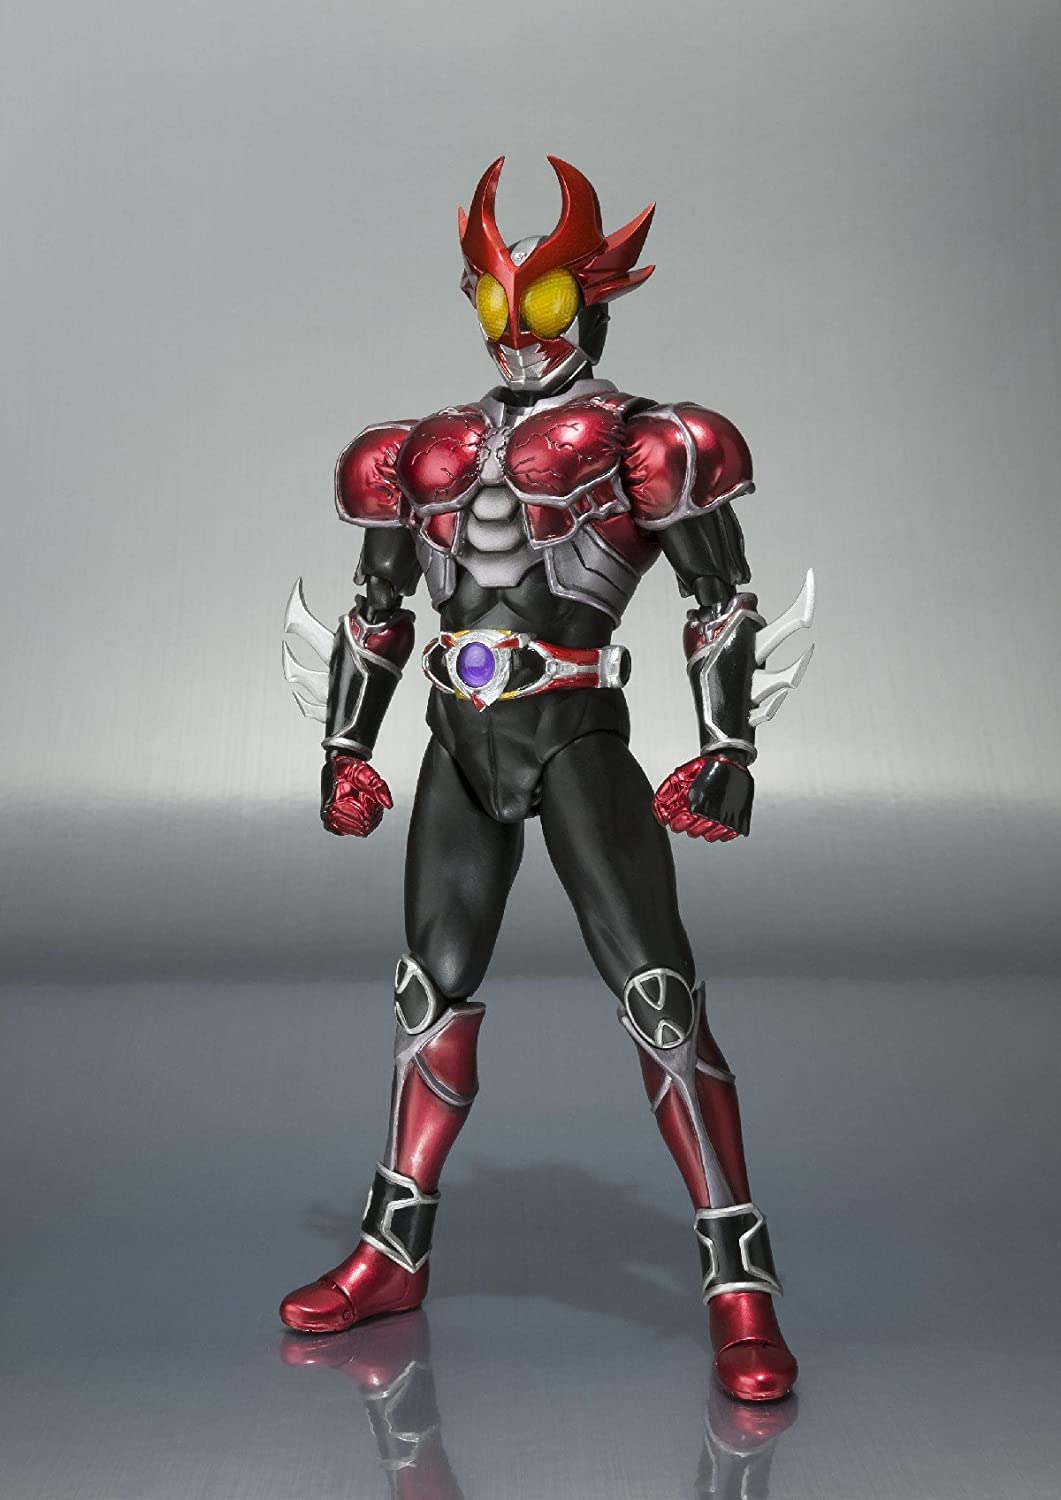 S.H. Figuarts - Kamen Rider Agito Burning Form from "Kamen Rider Agito" | animota